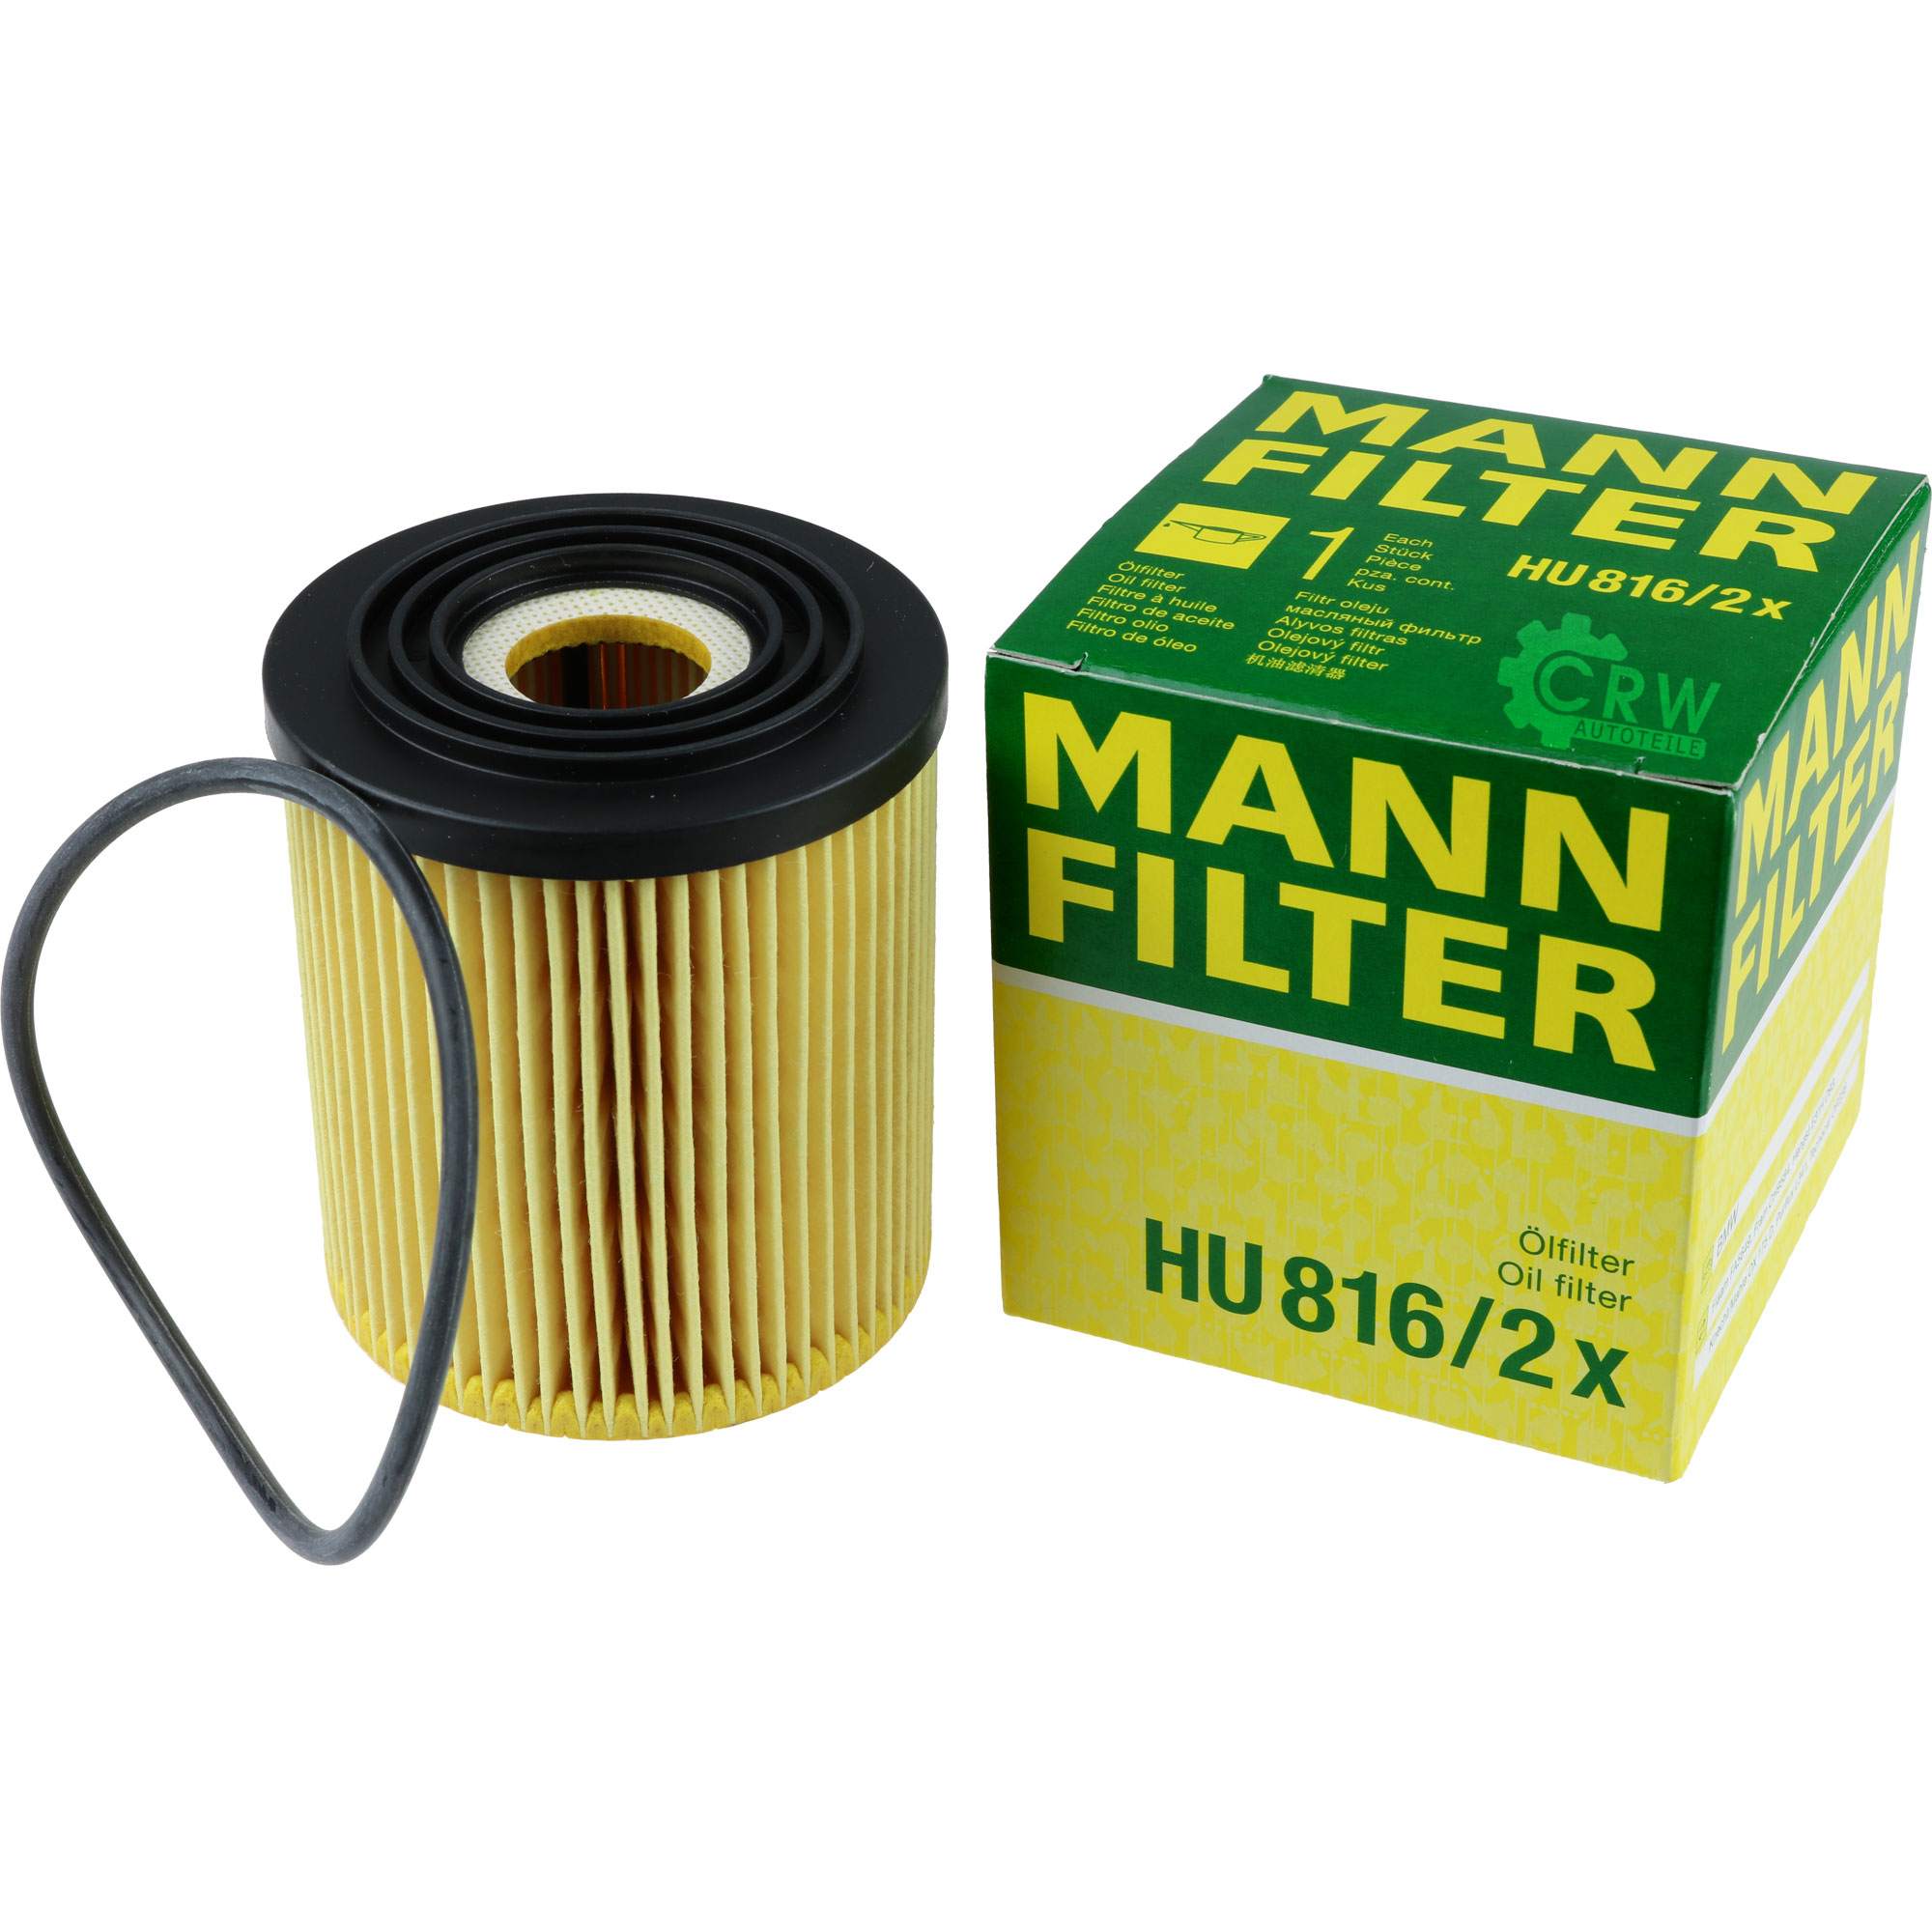 MANN-FILTER Ölfilter HU 816/2 x Oil Filter